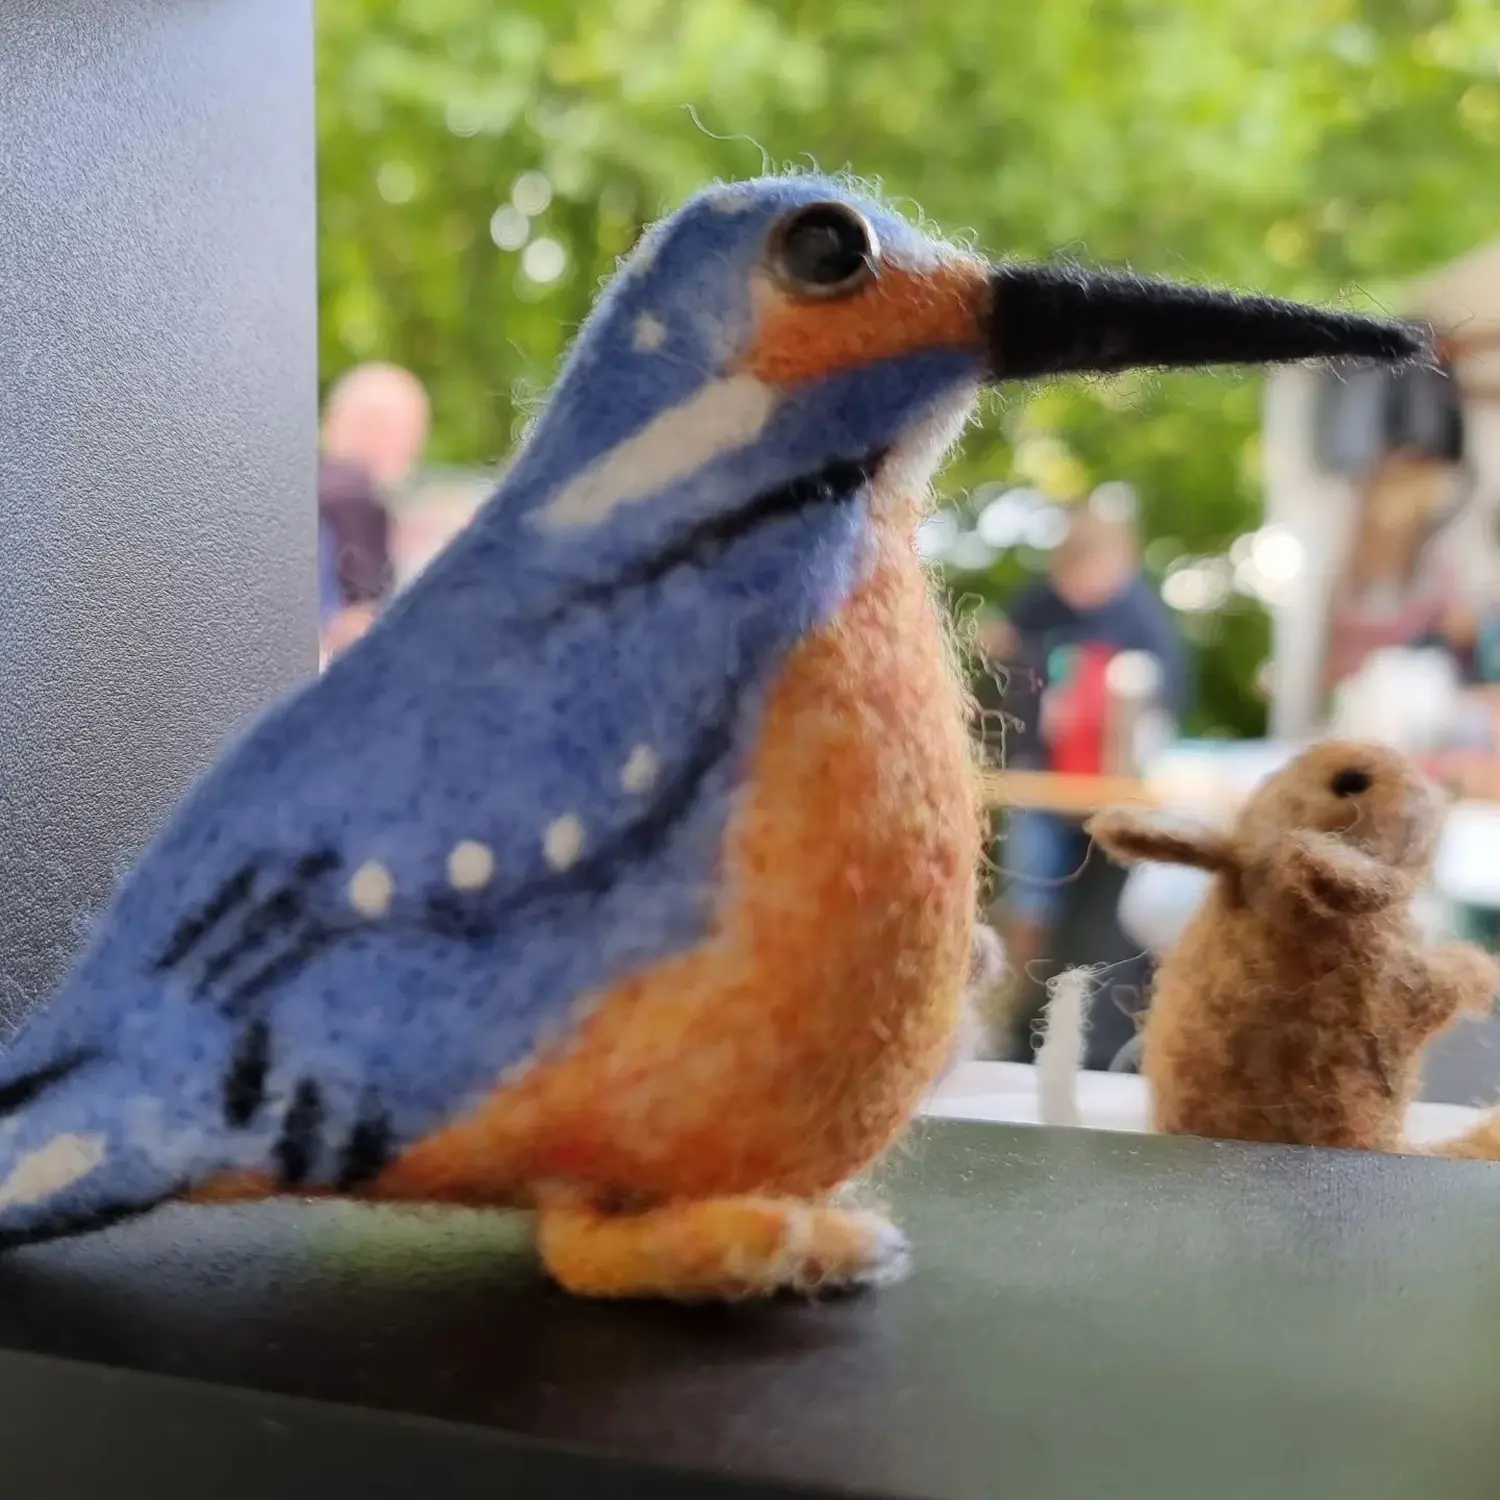 DUENDE - Filzkunst, Ein Vogel in oranger und blauer Farbe